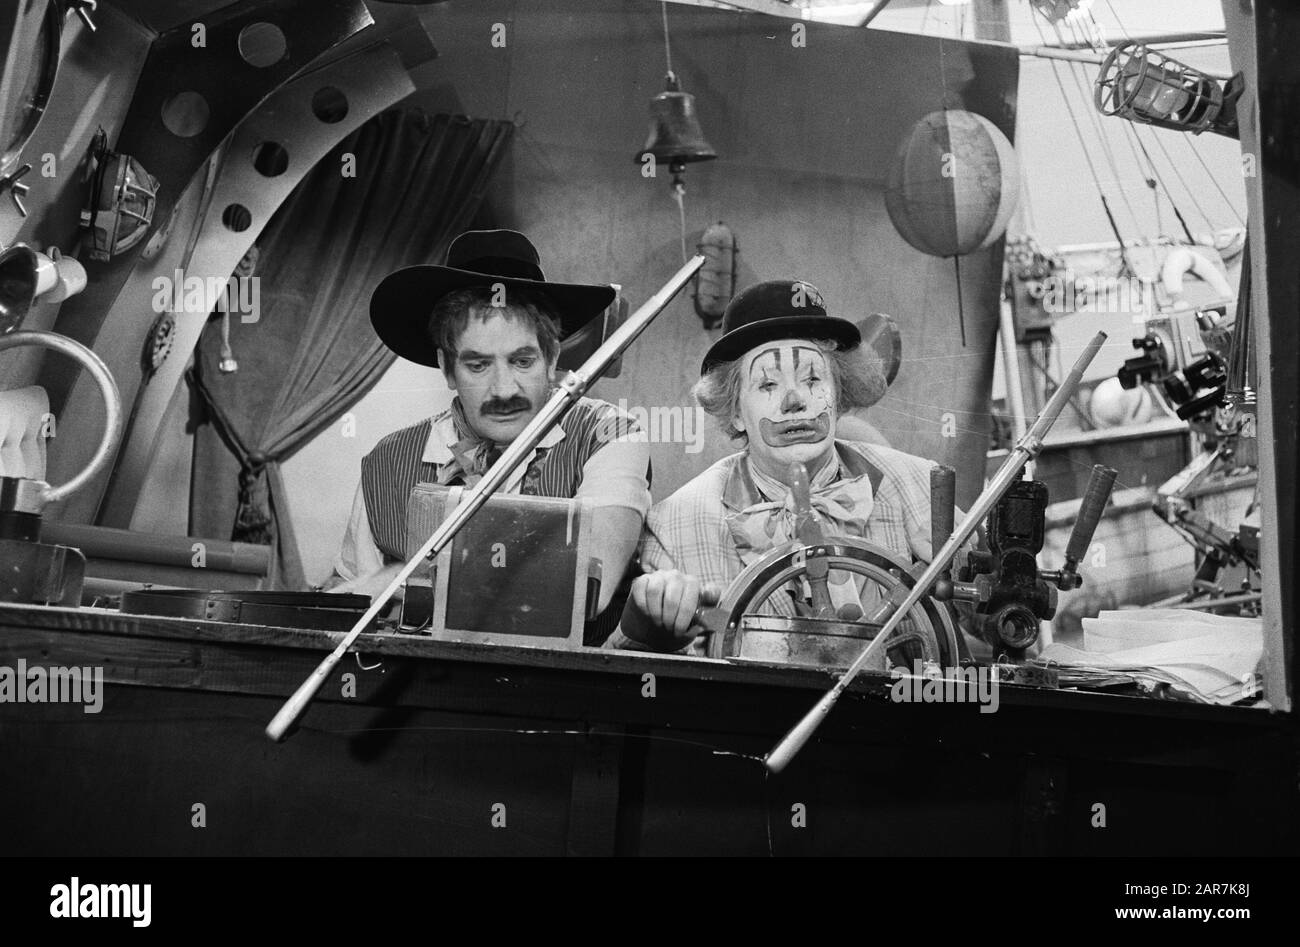 Pipo de Clown e Felicio The Gypsy Data: 4 Novembre 1963 Parole Chiave: Clown, programmi televisivi Nome personale: Felicio, Pipo de Clown, Prussia, Jan, Witschge, Cor Foto Stock